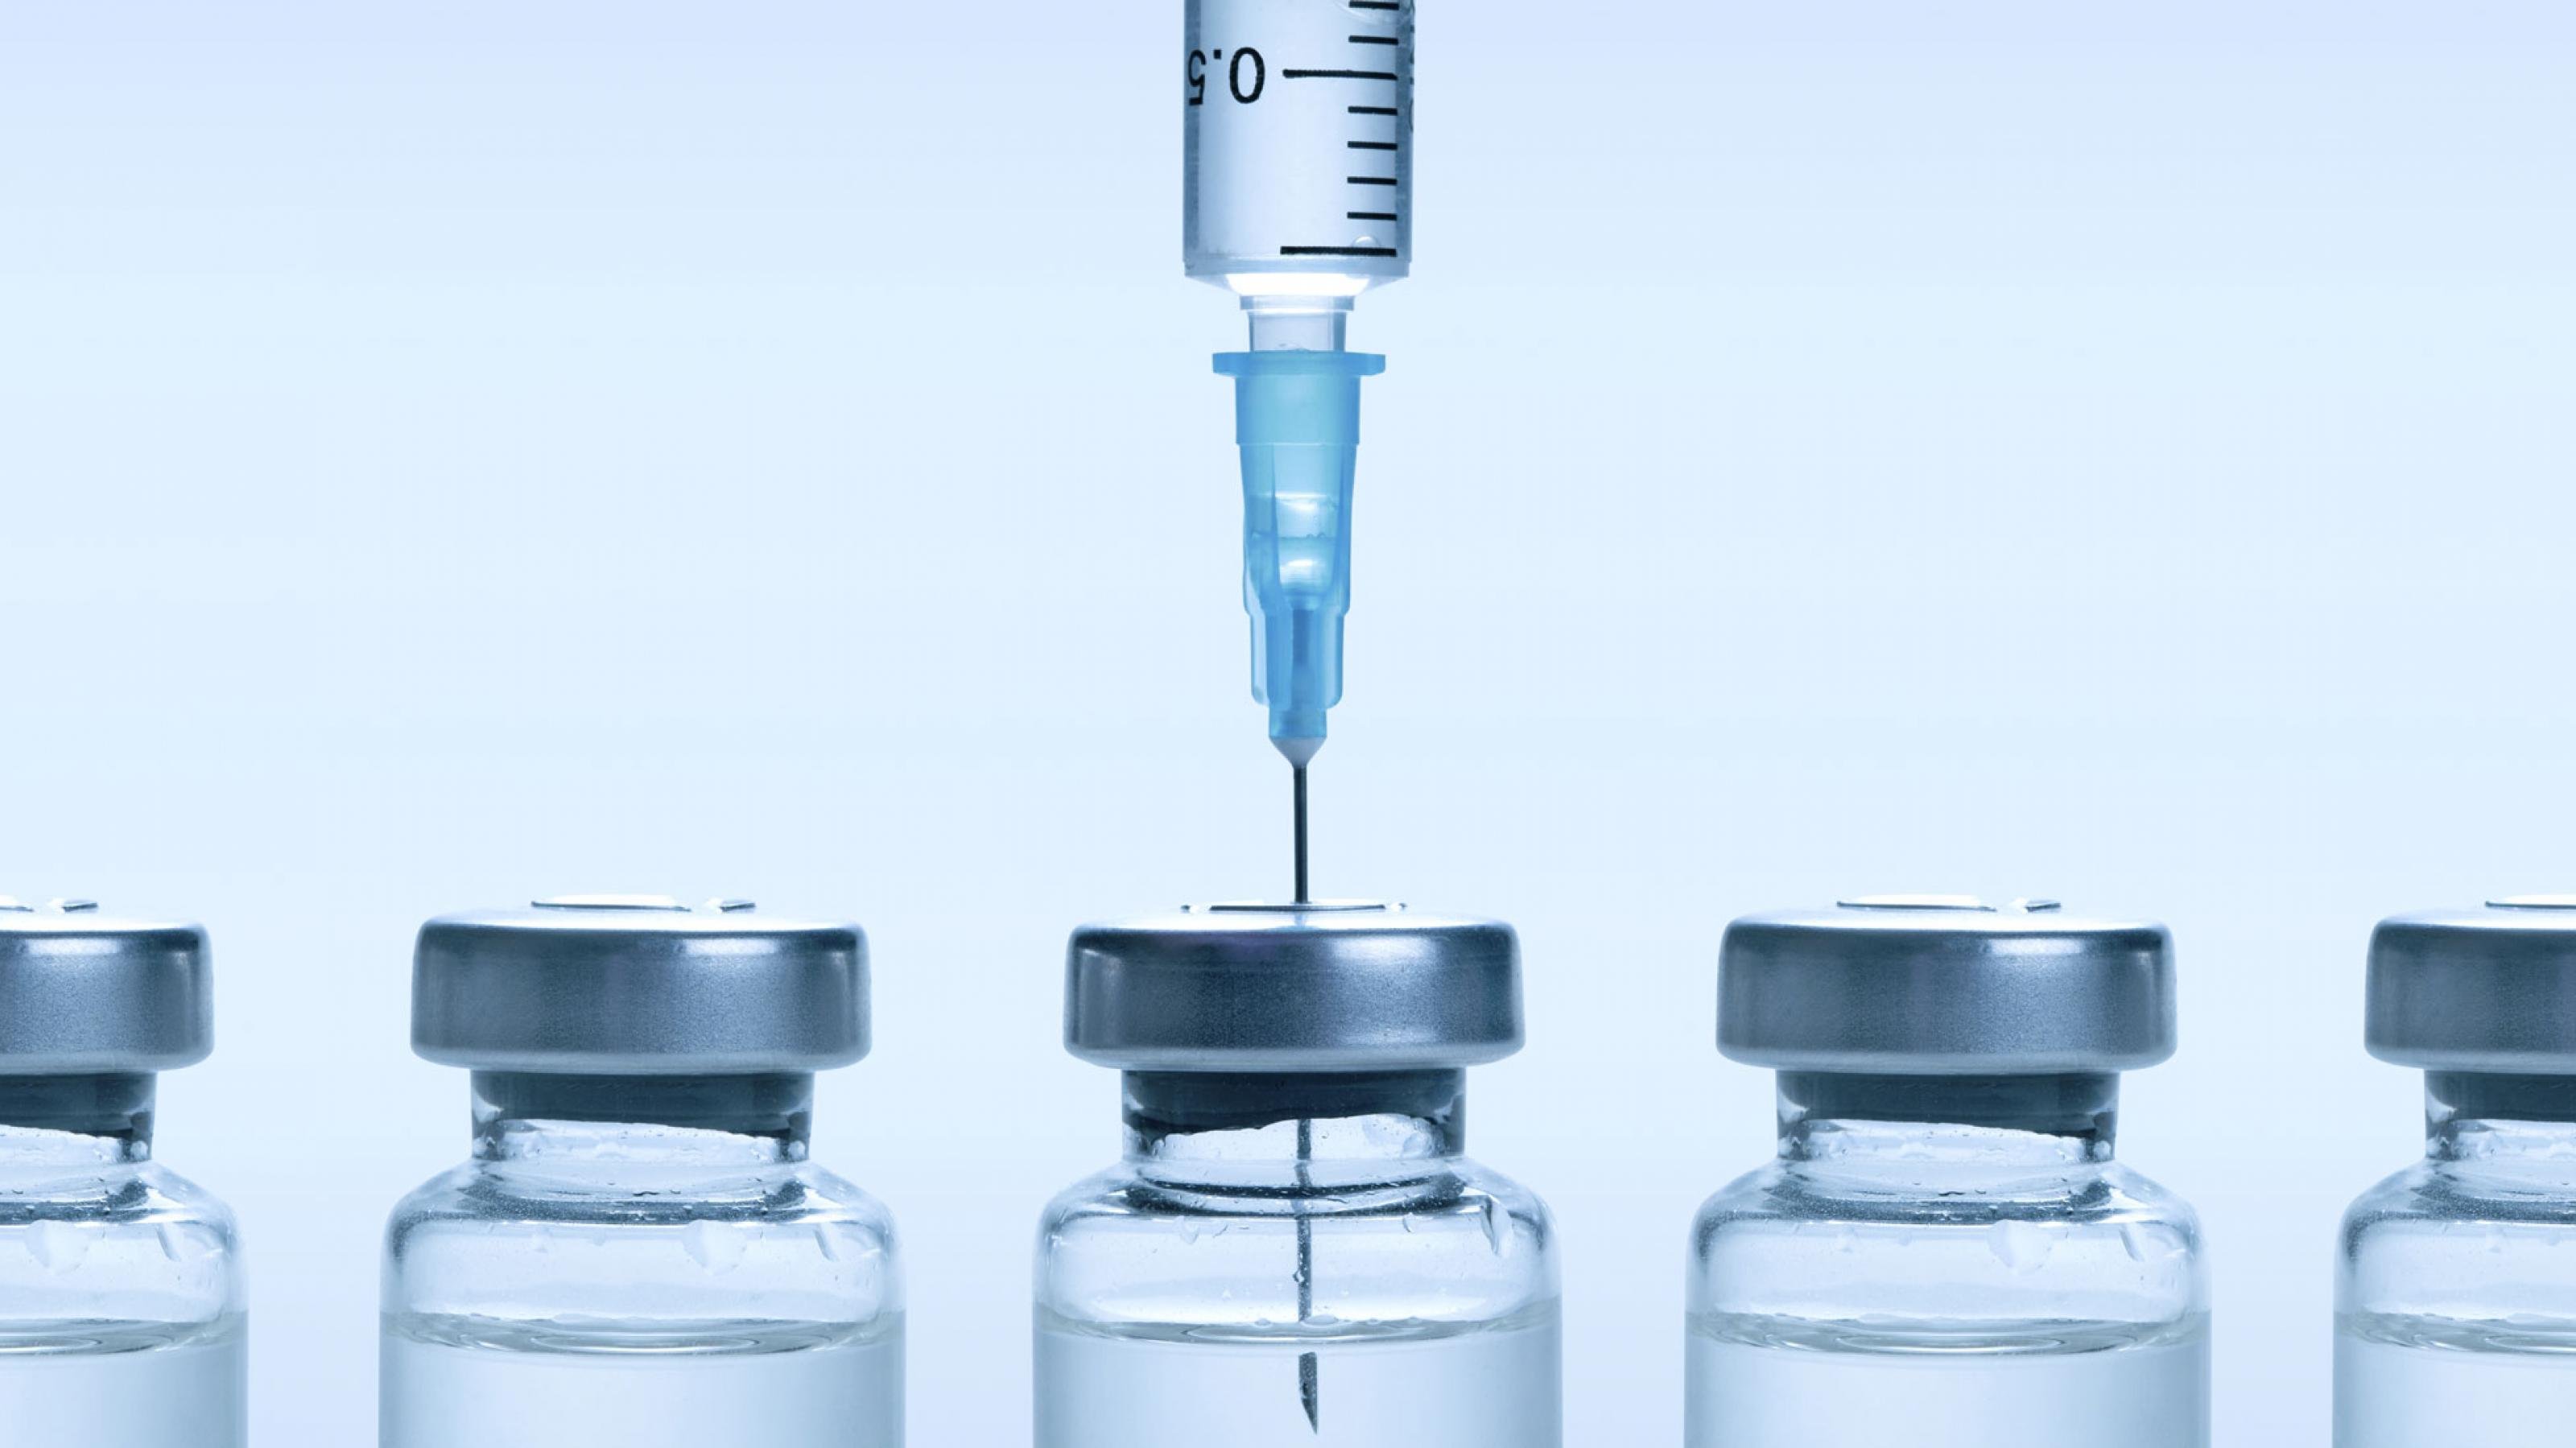 Das Bild zeigt fünf Impfstoff-Fläschen, aus dem mittleren wird der Impfstoff gerade mit Hilfe einer Spritze aufgezogen.